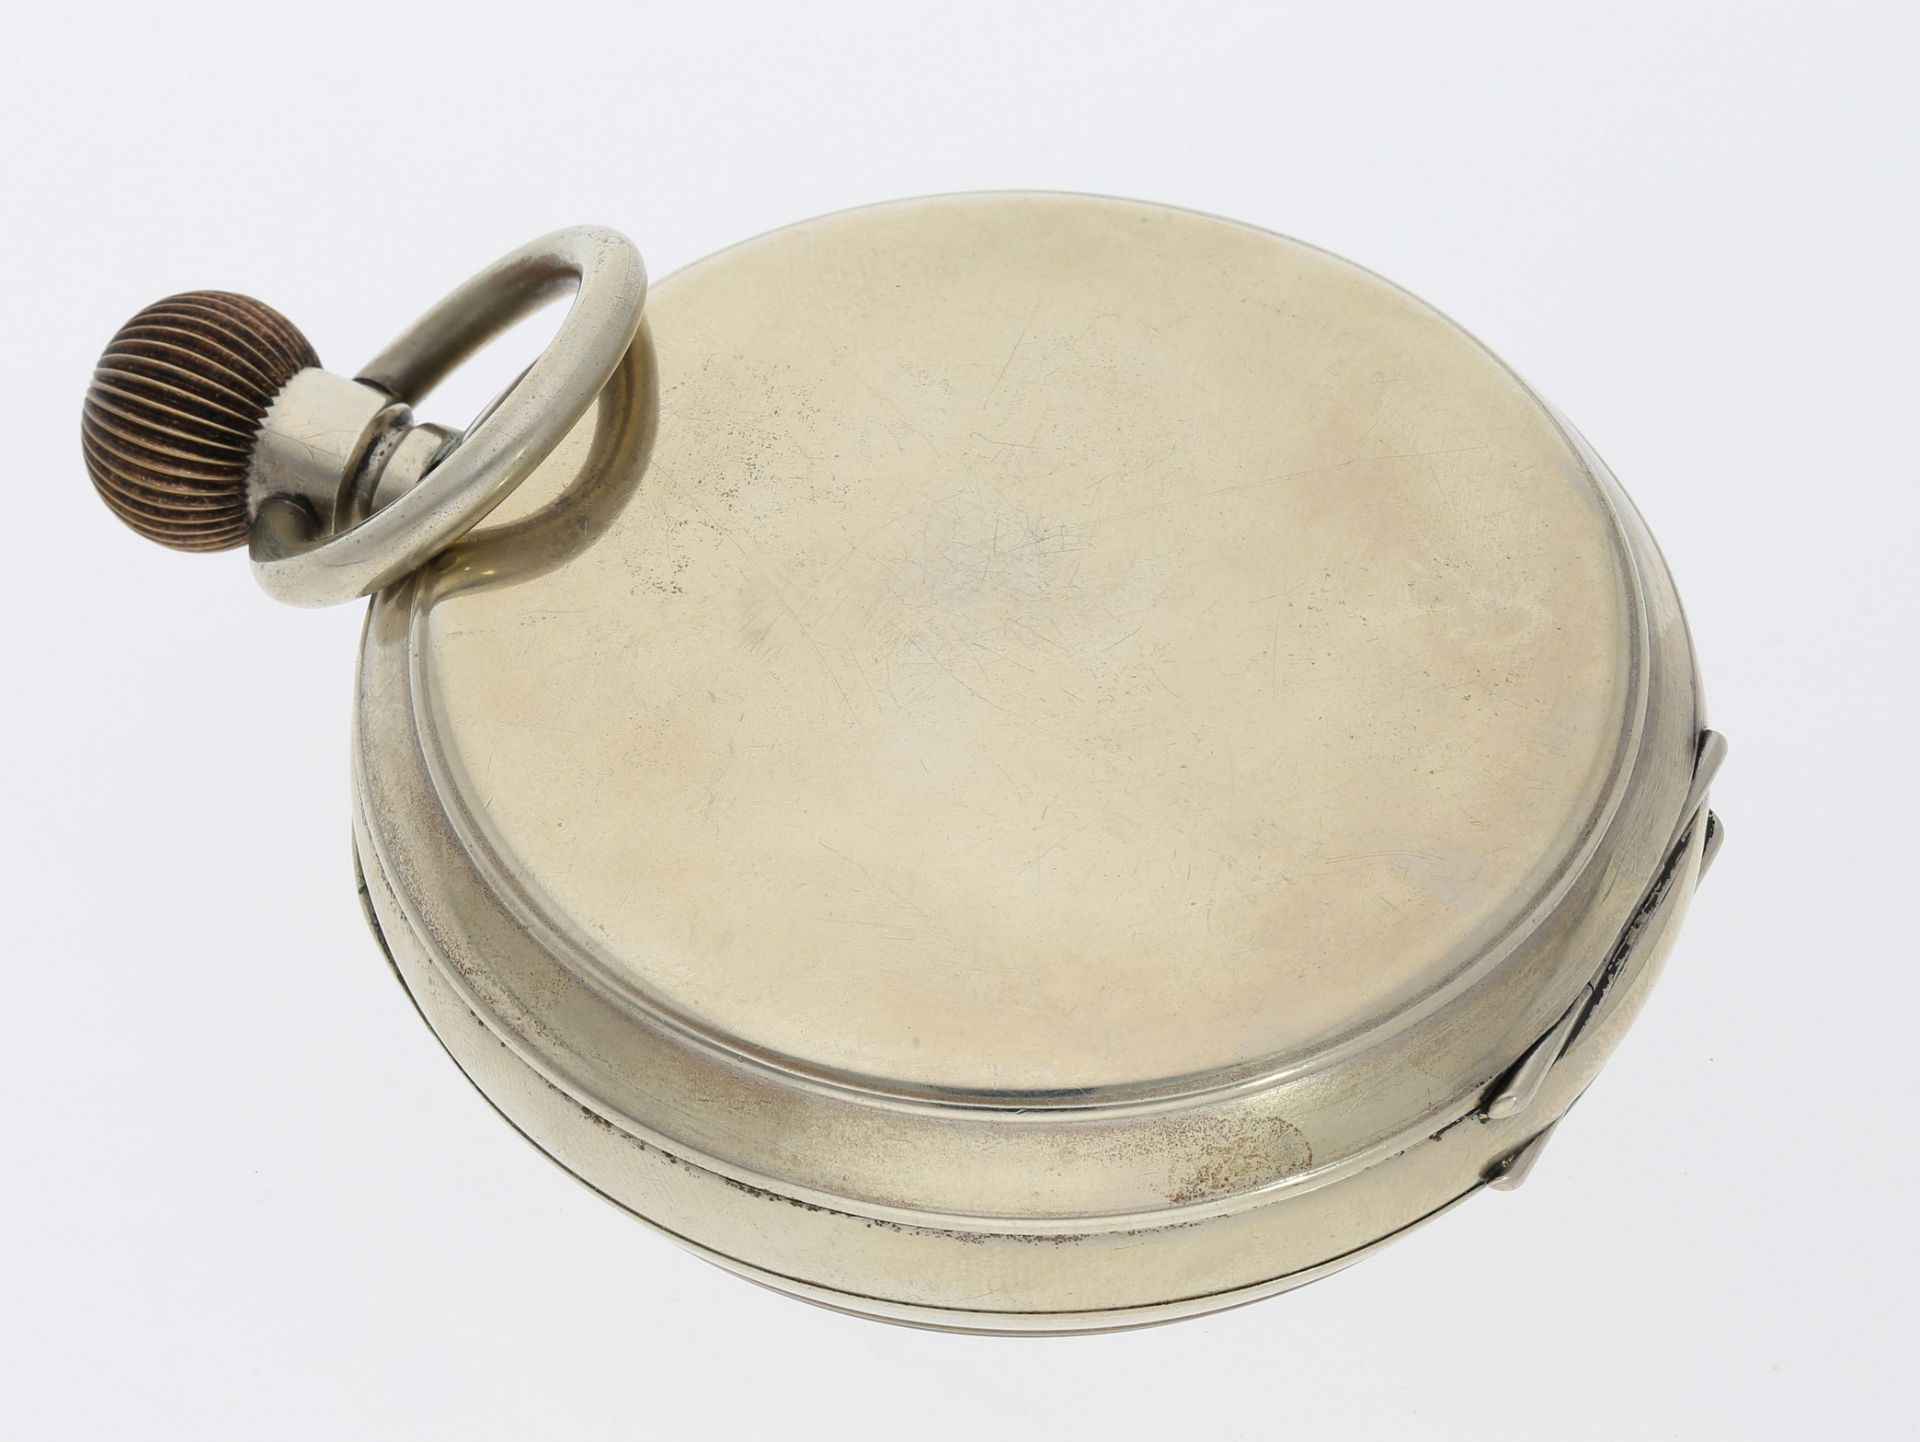 Taschenuhr: seltene, übergroße Taschenuhr mit 8-Tage-Werk, vermutlich Omega, ca. 1890 - Image 2 of 3